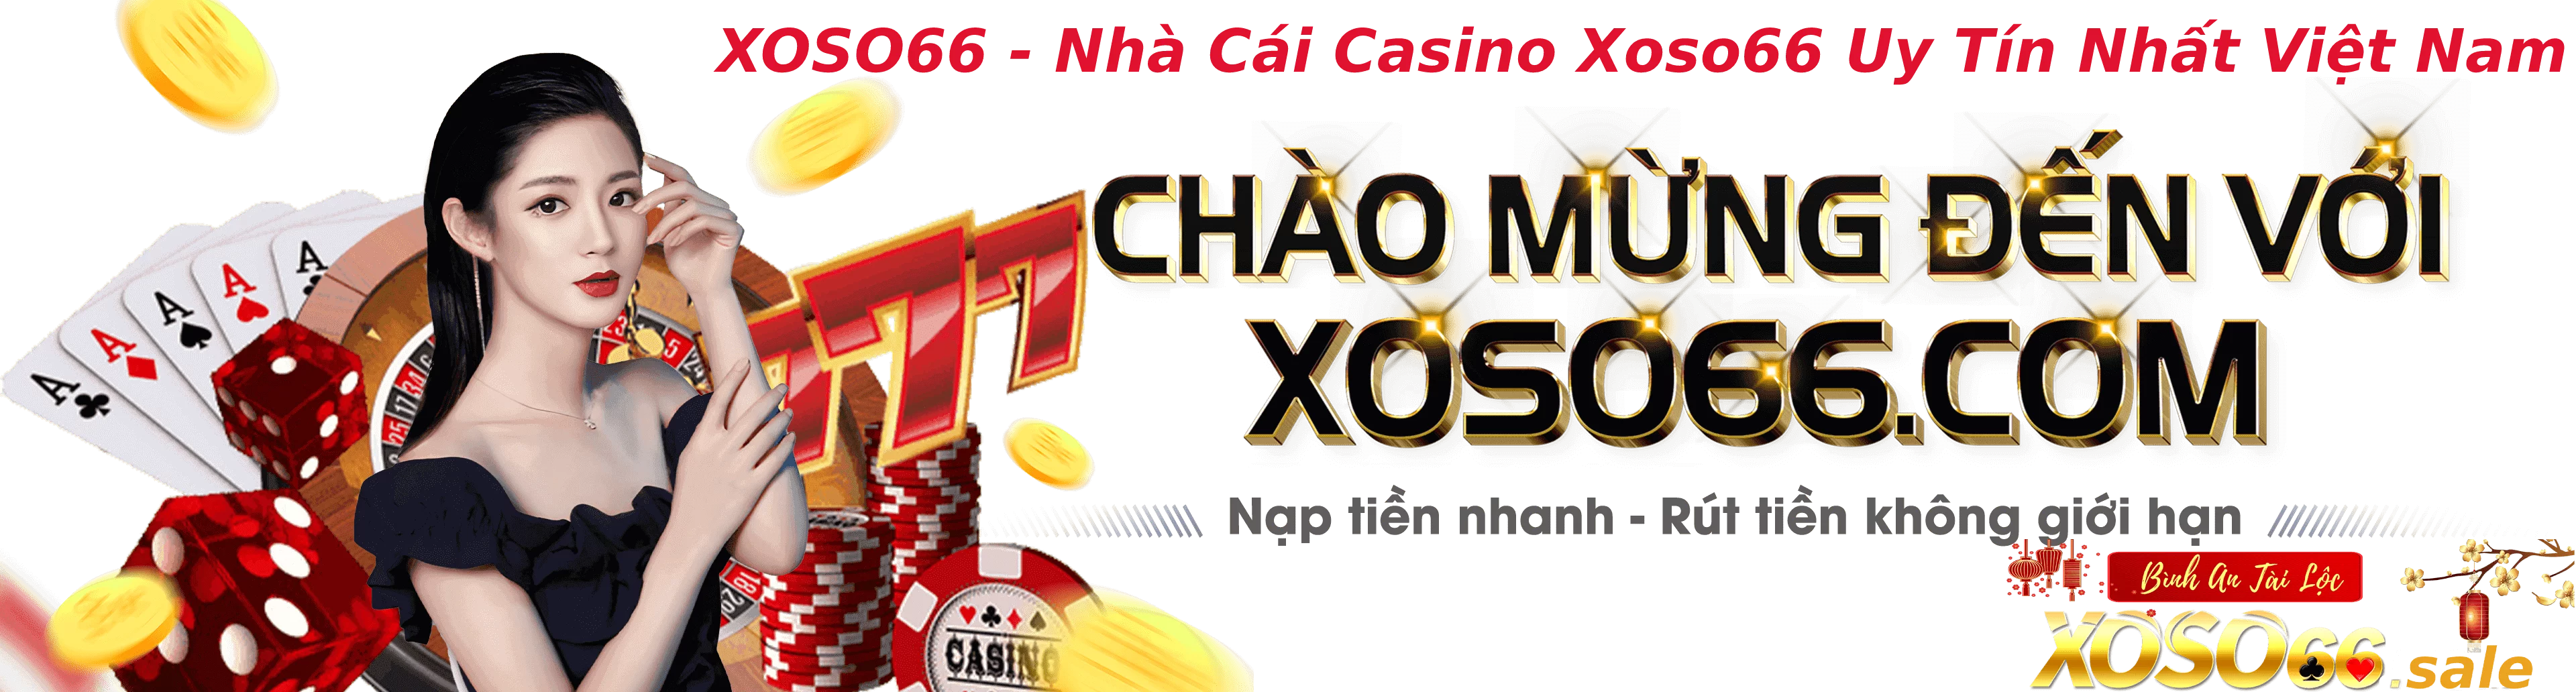 XOSO66 - Nhà Cái Casino Xoso66 Uy Tín Nhất Việt Nam